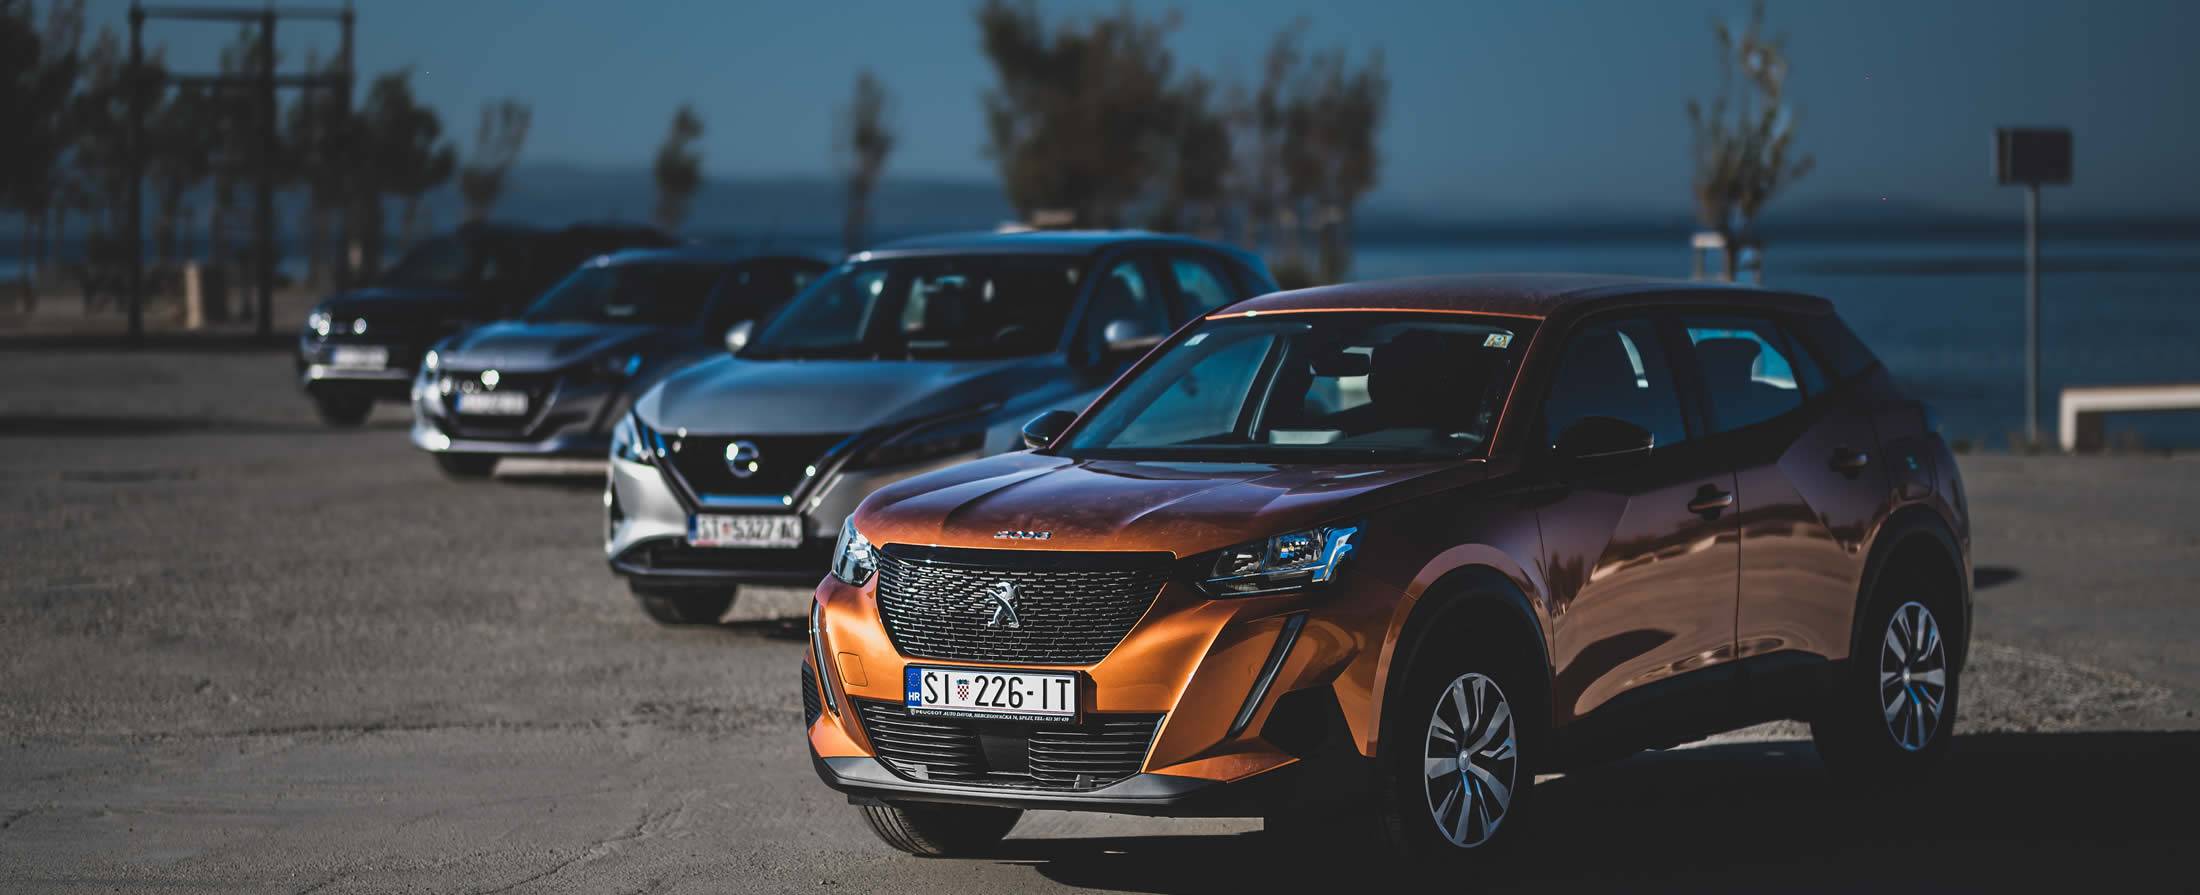 Lutar Rent A Car - Povoljan najam vozila u Hrvatskoj već od 27,60 € (207,90 kn) po danu!